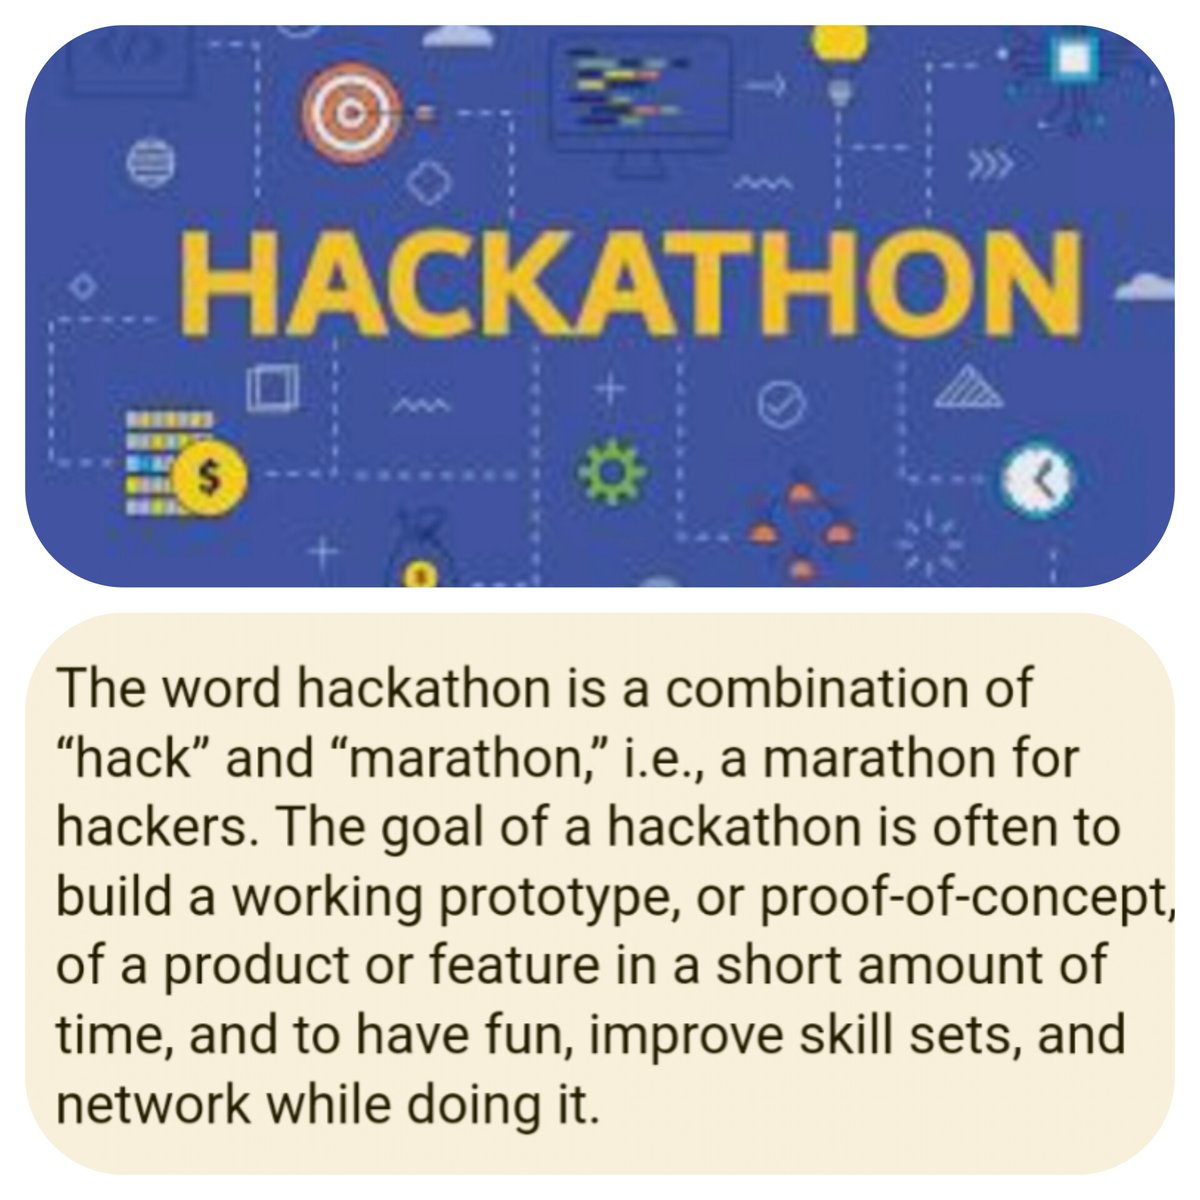 #معلومة
ماهو الهاكثون #Hackathon؟

الهاكثون يتكون من دمج كلمتين: Hack (بمعنى الاستكشاف)، وMarathon (بمعنى سباق).

وبدات مسابقات الهاكثونات (للهاكرز الاخلاقيين) لاكتشاف مدى ضعف او قوة الانظمة الالكترونية للشركات والجهات الاخرى.

وأحداث الهاكاثون تعرف عالمياً بانها تنظيم مسابقات…